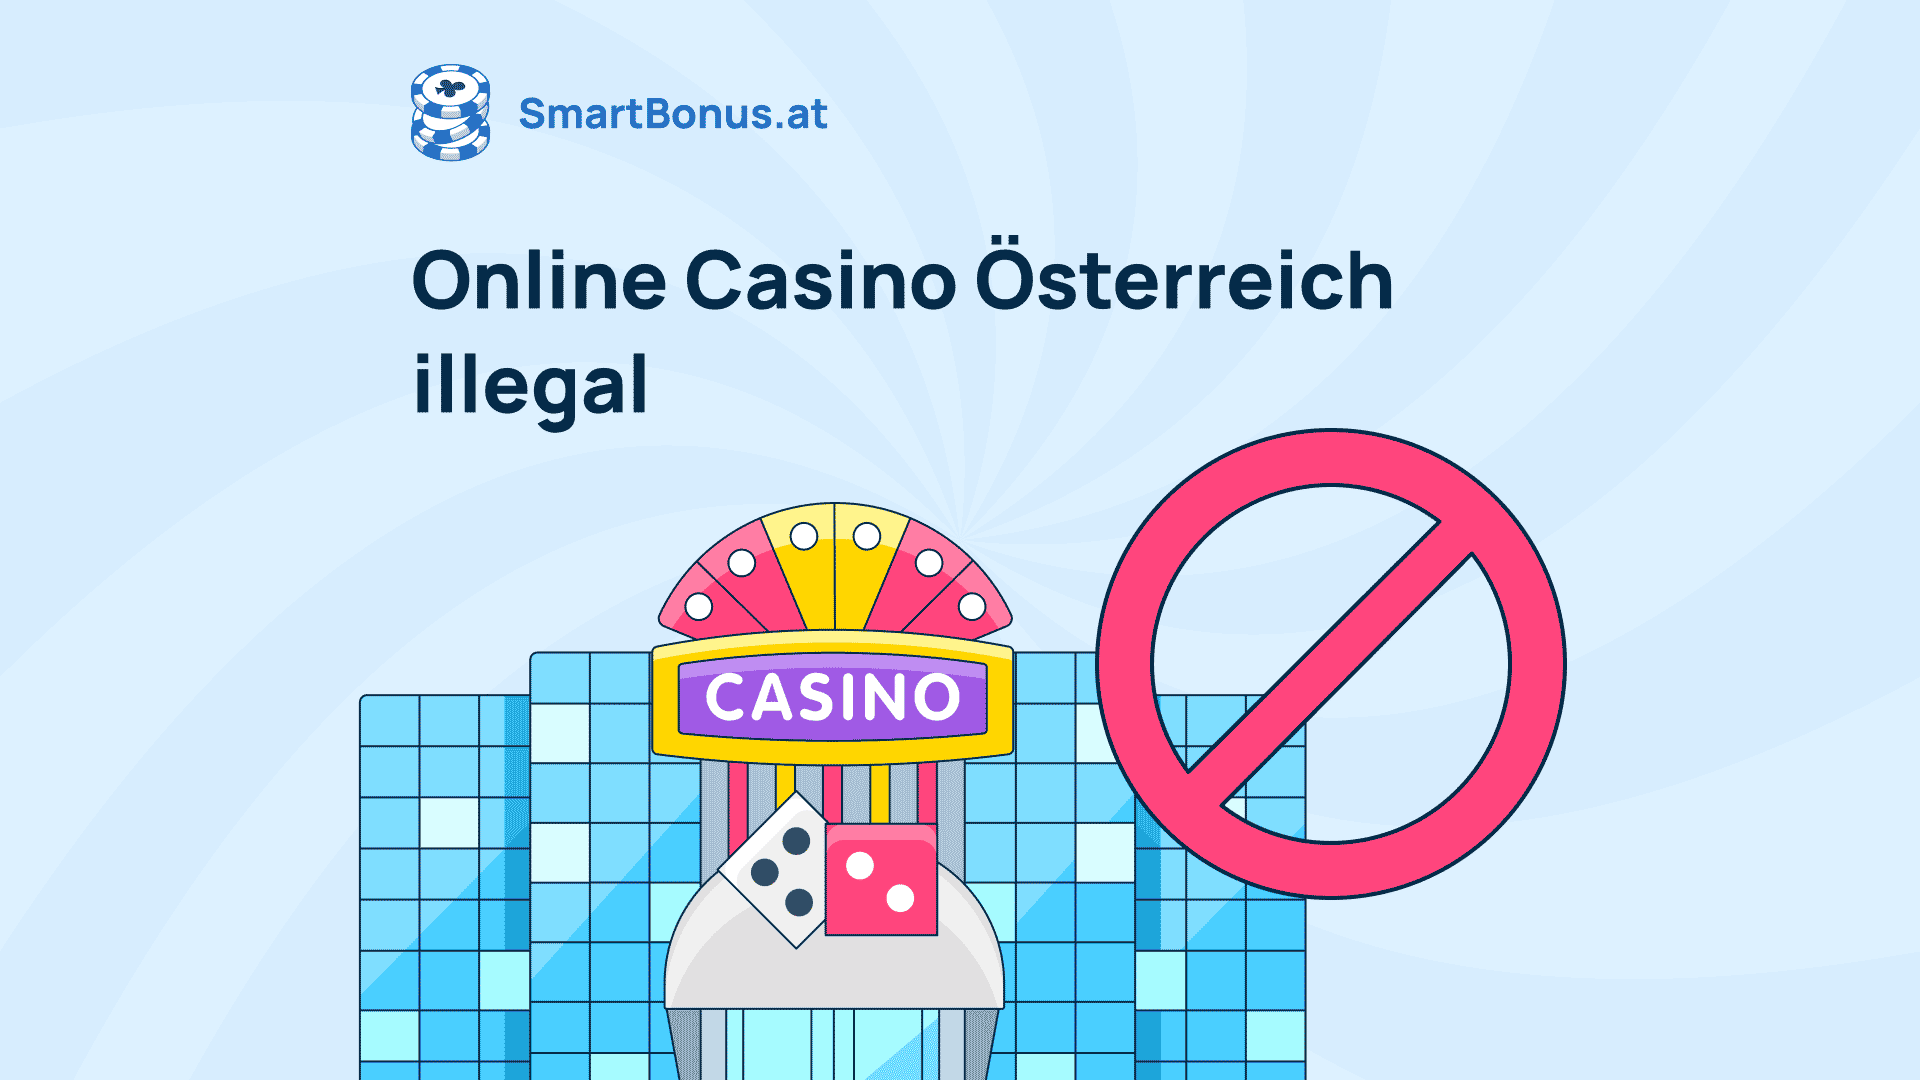 Finden Sie jetzt heraus, was Sie für schnelles Casino Online tun sollten.